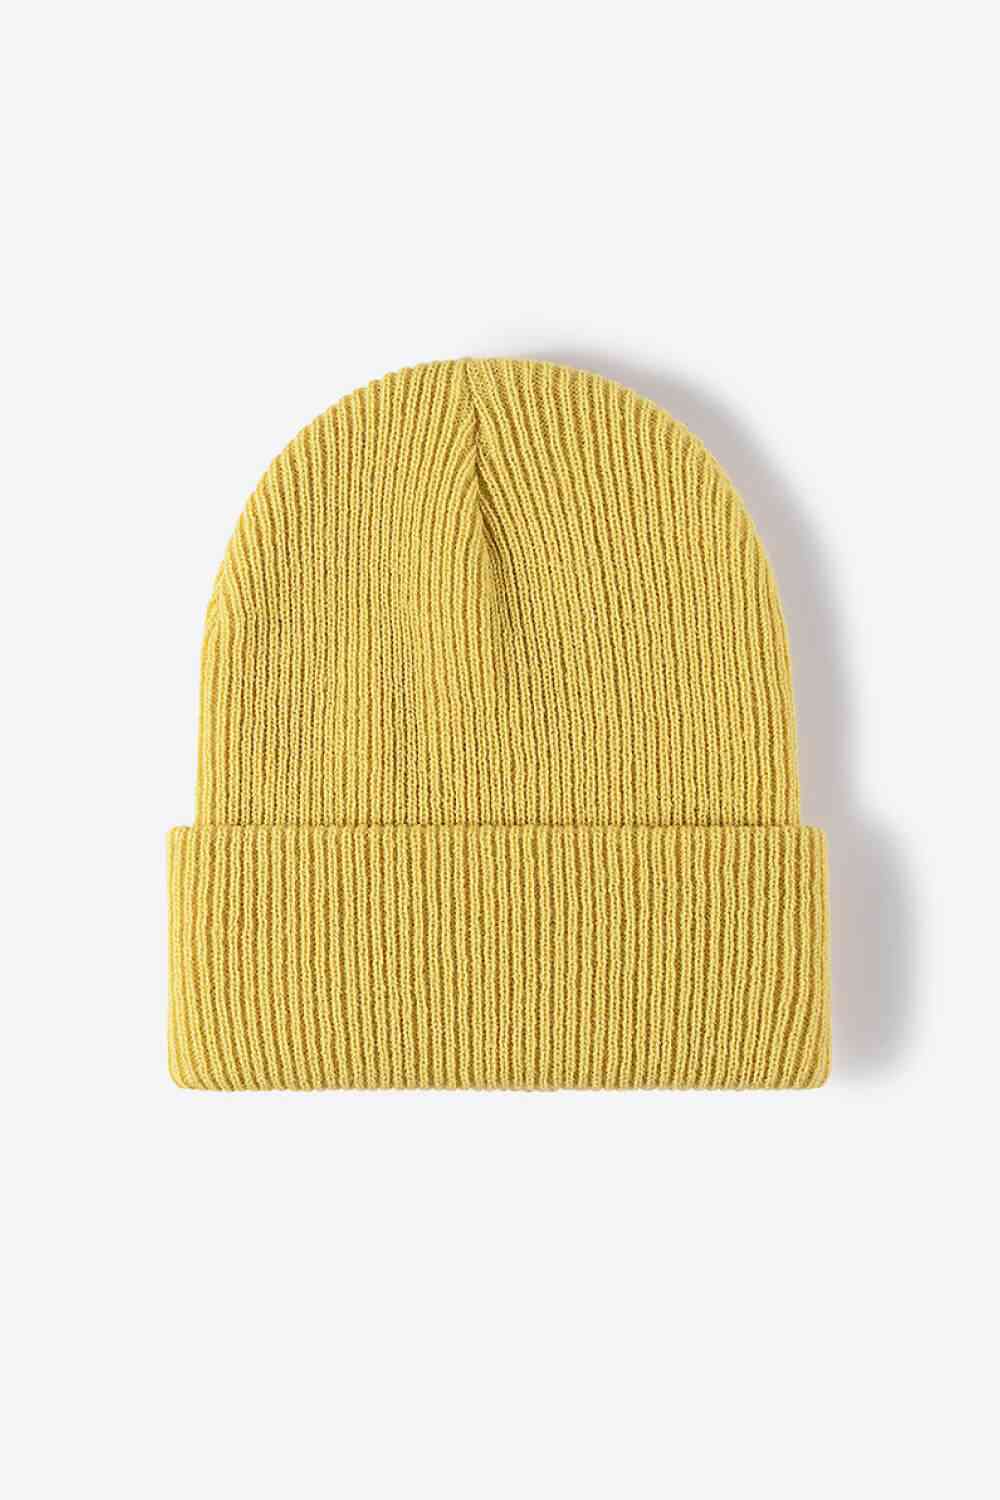 Warm Winter Knit Beanie Yellow One Size